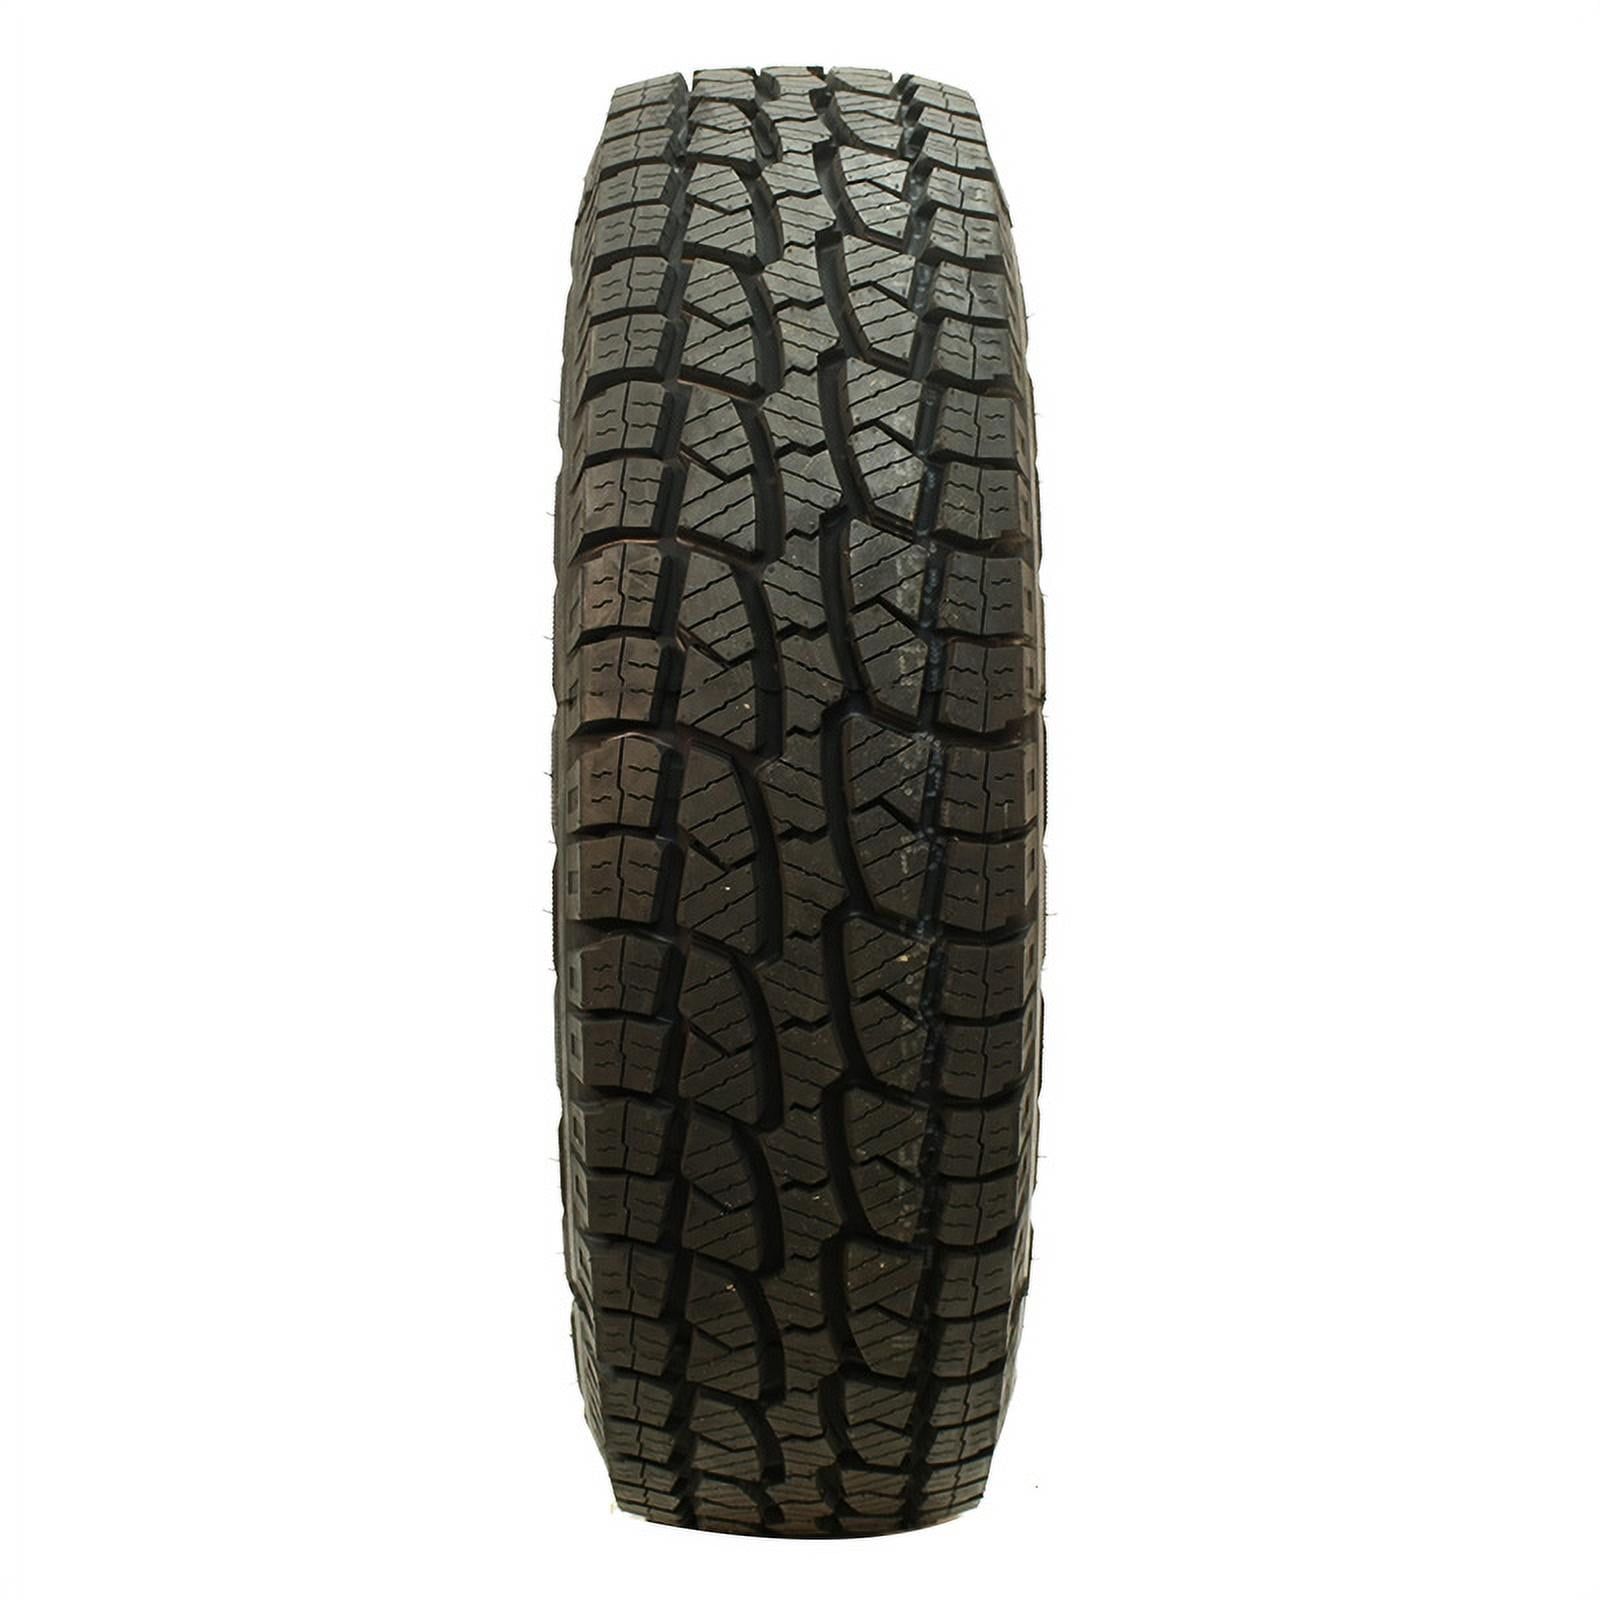 Season Radial Tire-265/75R16 123Q Westlake SL309 All